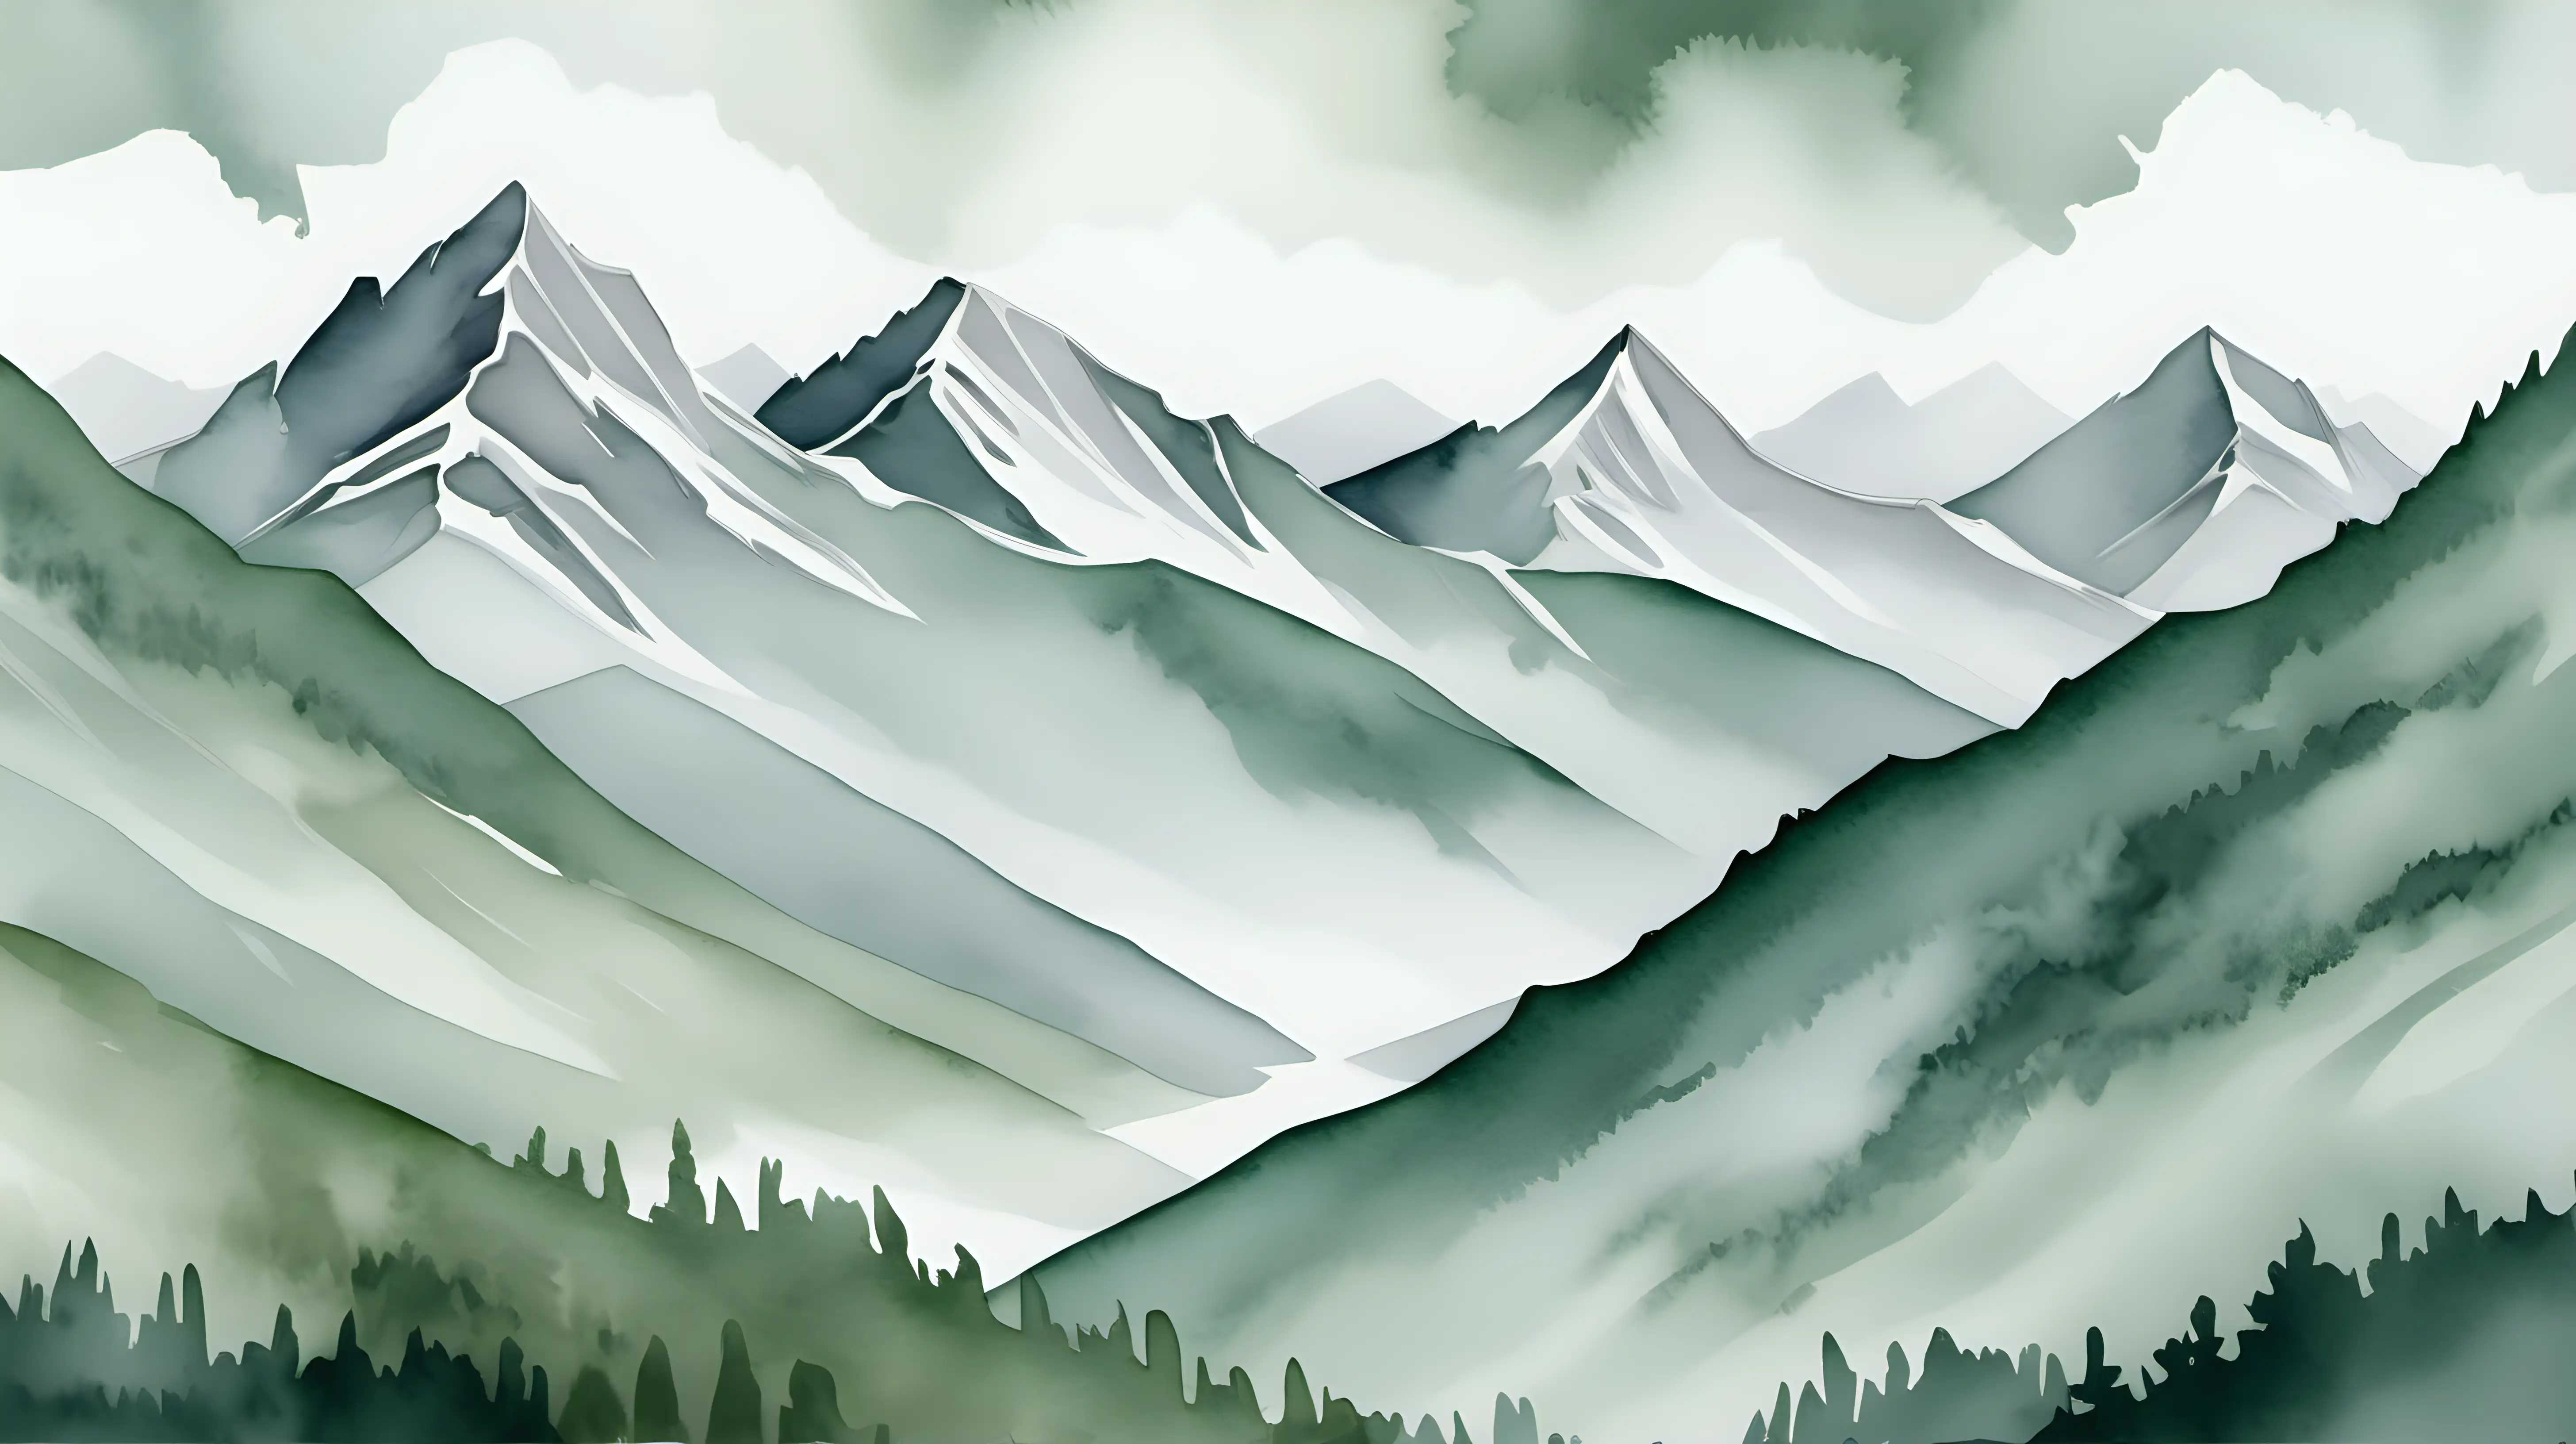 akvarel styl, pohled na hory, v šedo zeleném odstínu, detail více pouze na hory, špičky hor
